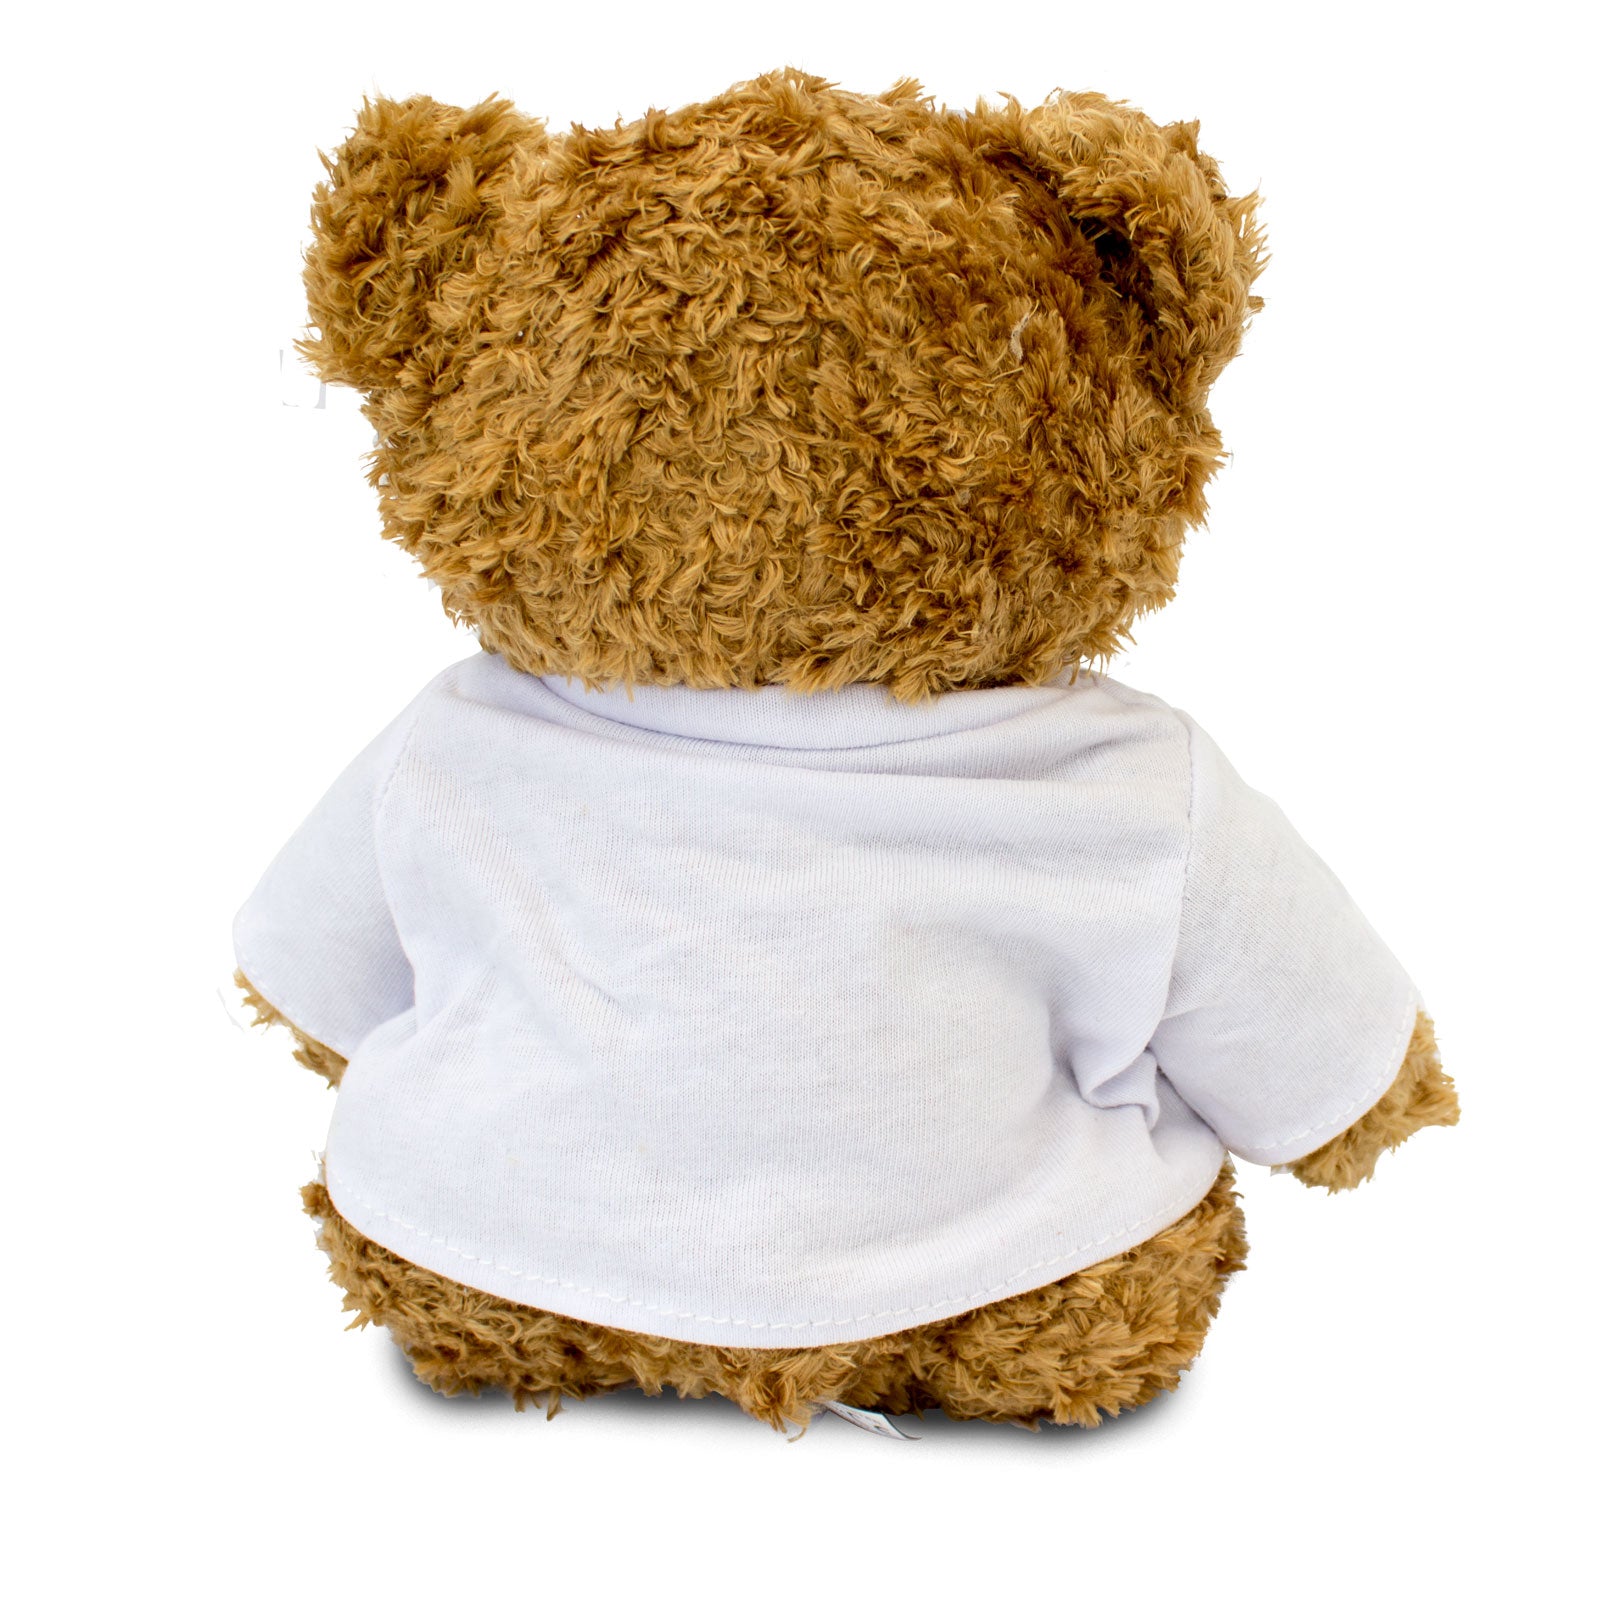 Get Well Soon Daniel - Teddy Bear